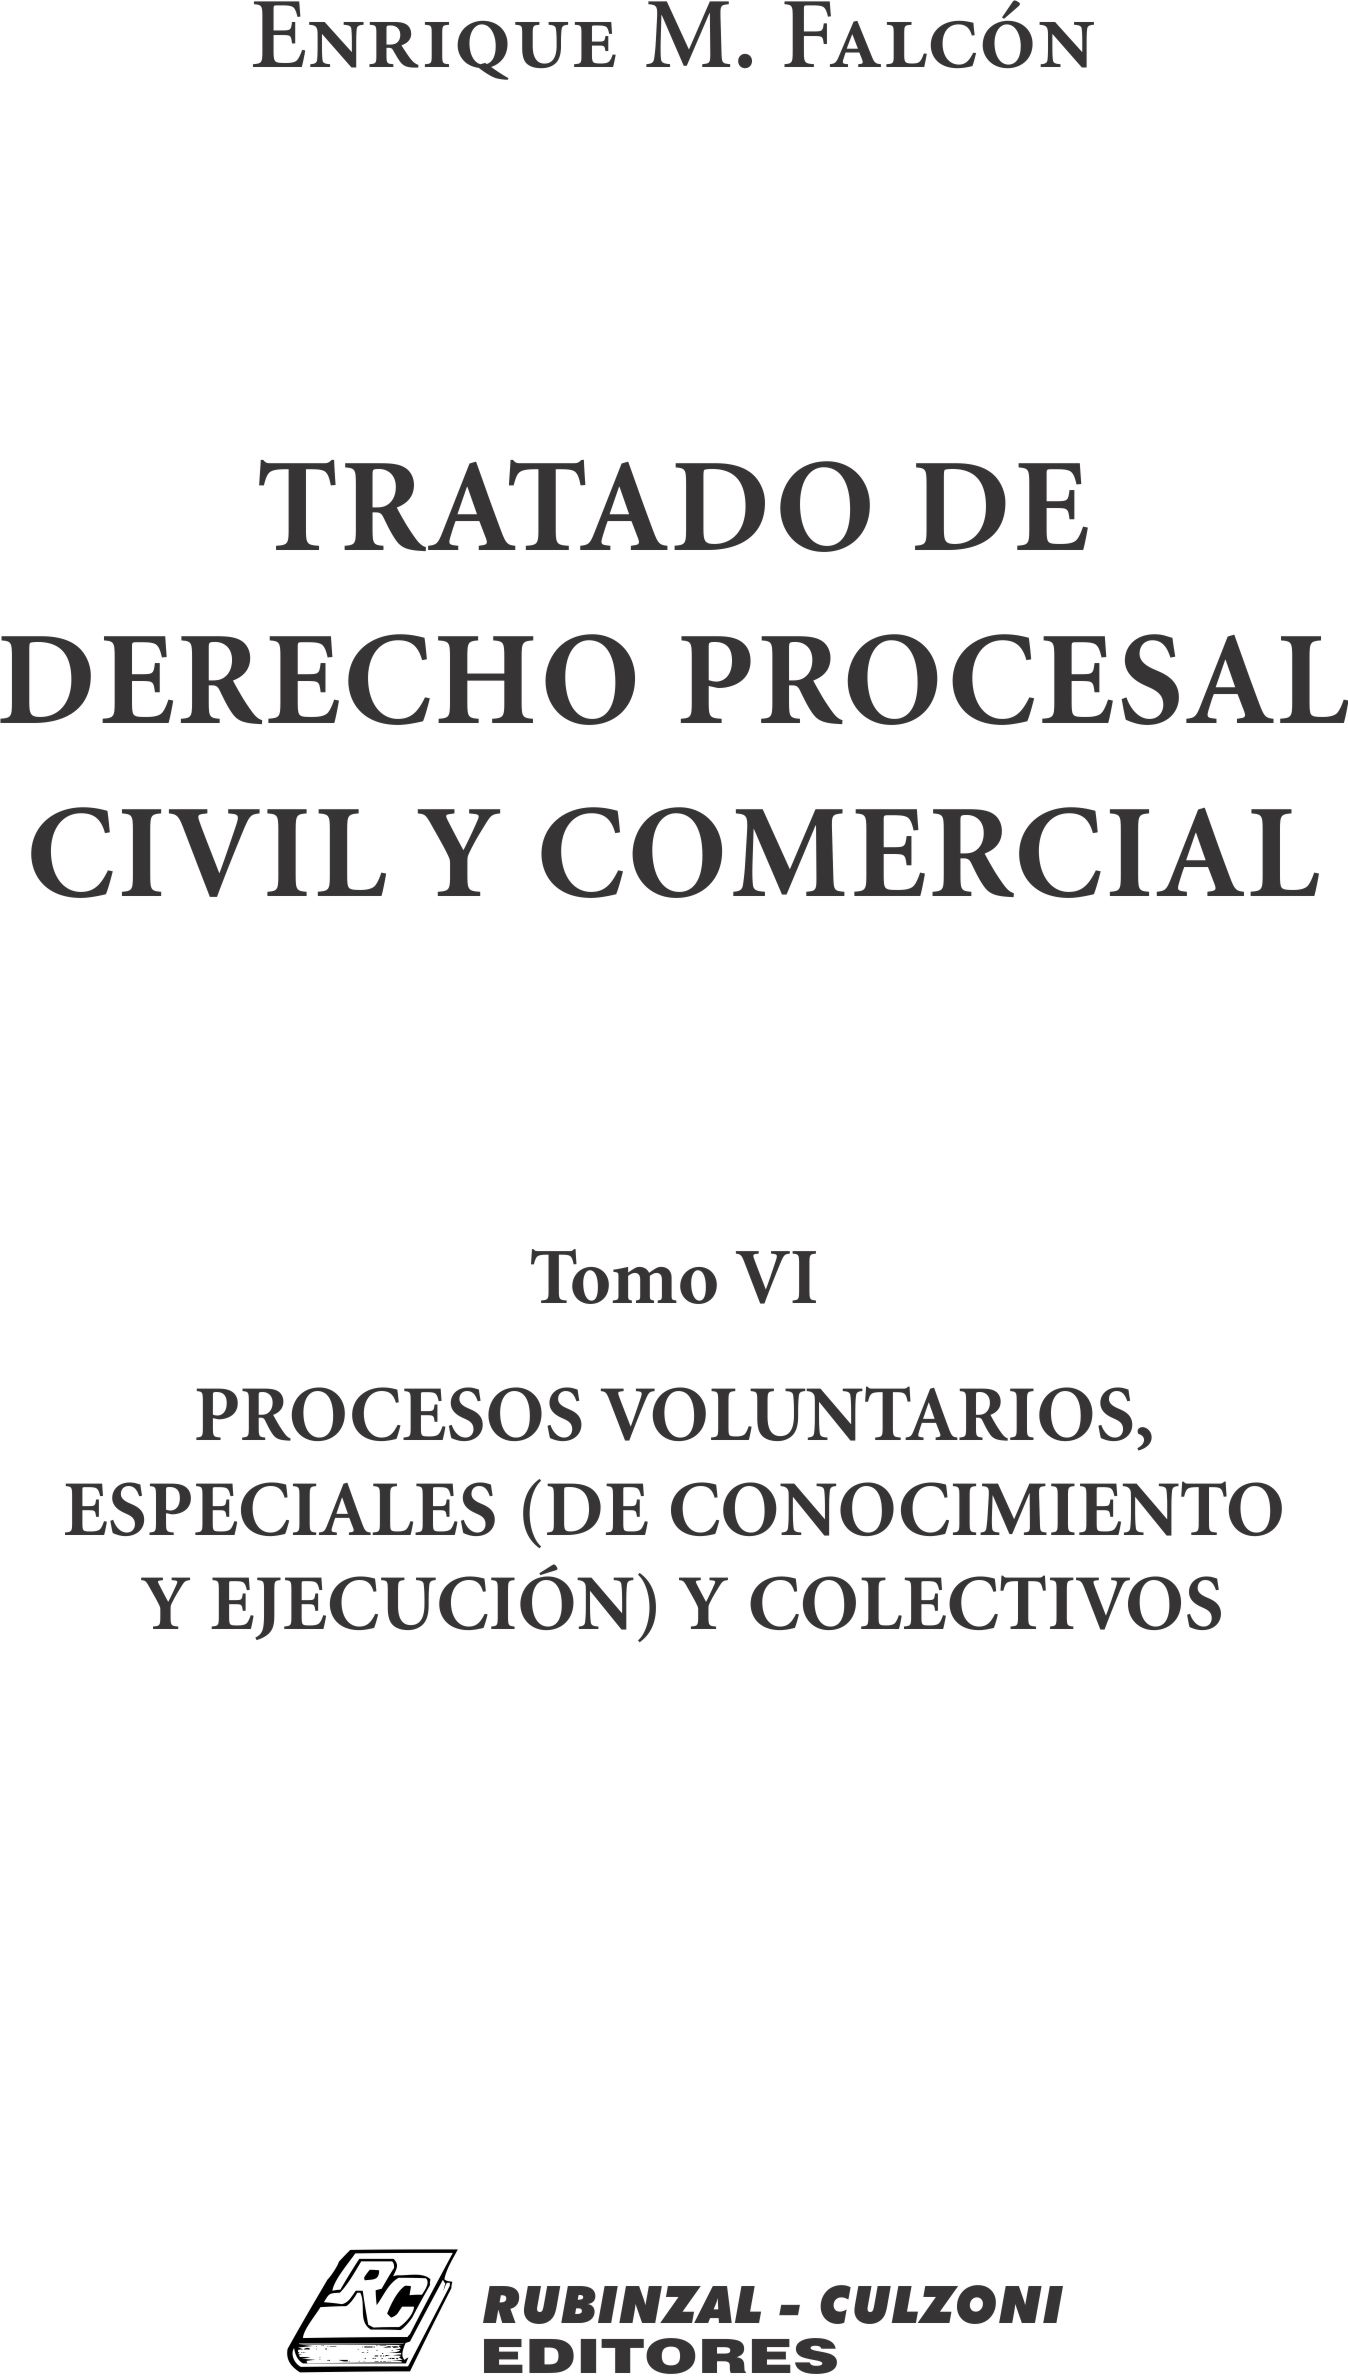 Tratado de Derecho Procesal Civil y Comercial. - Tomo VI. Procesos voluntarios, especiales (de conocimiento y ejecución) y colectivos.